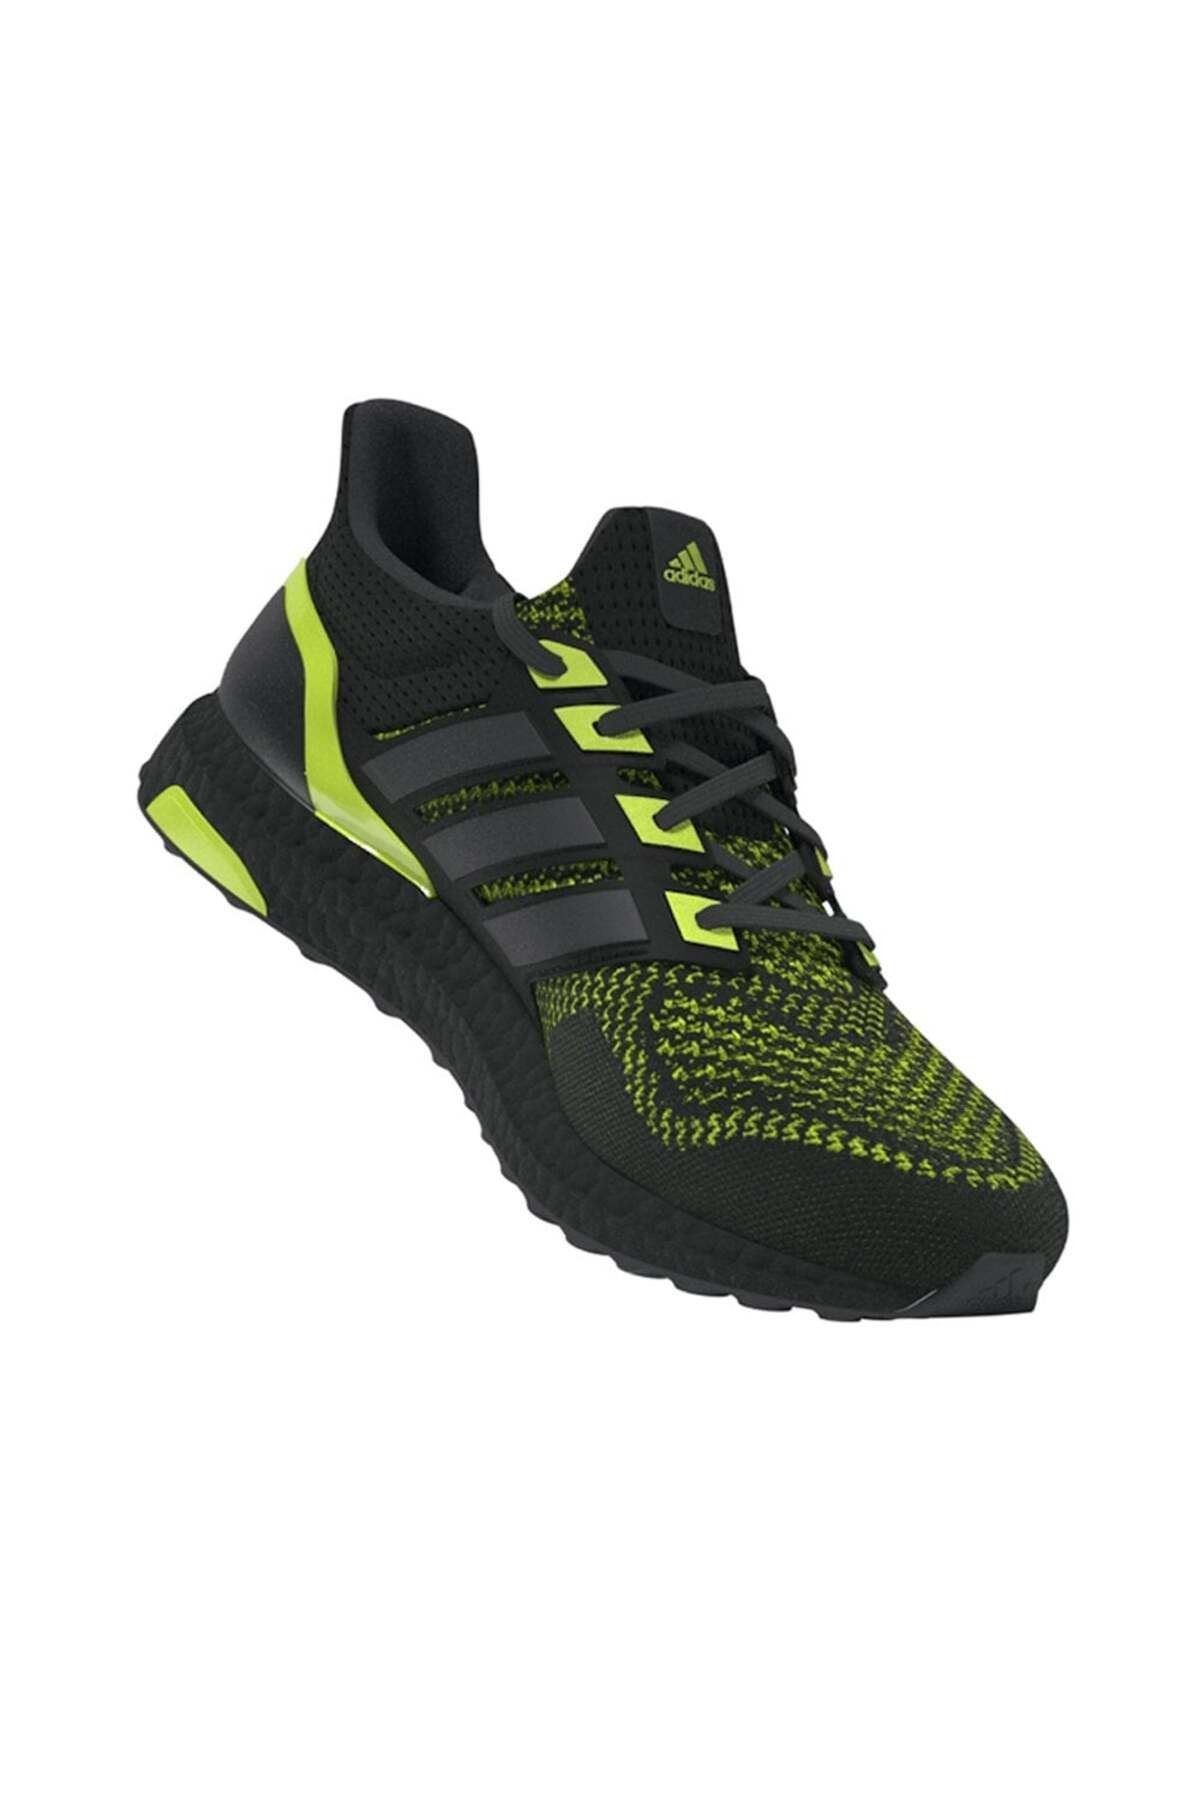 adidas Ultraboost 1.0 Erkek Koşu Ayakkabısı